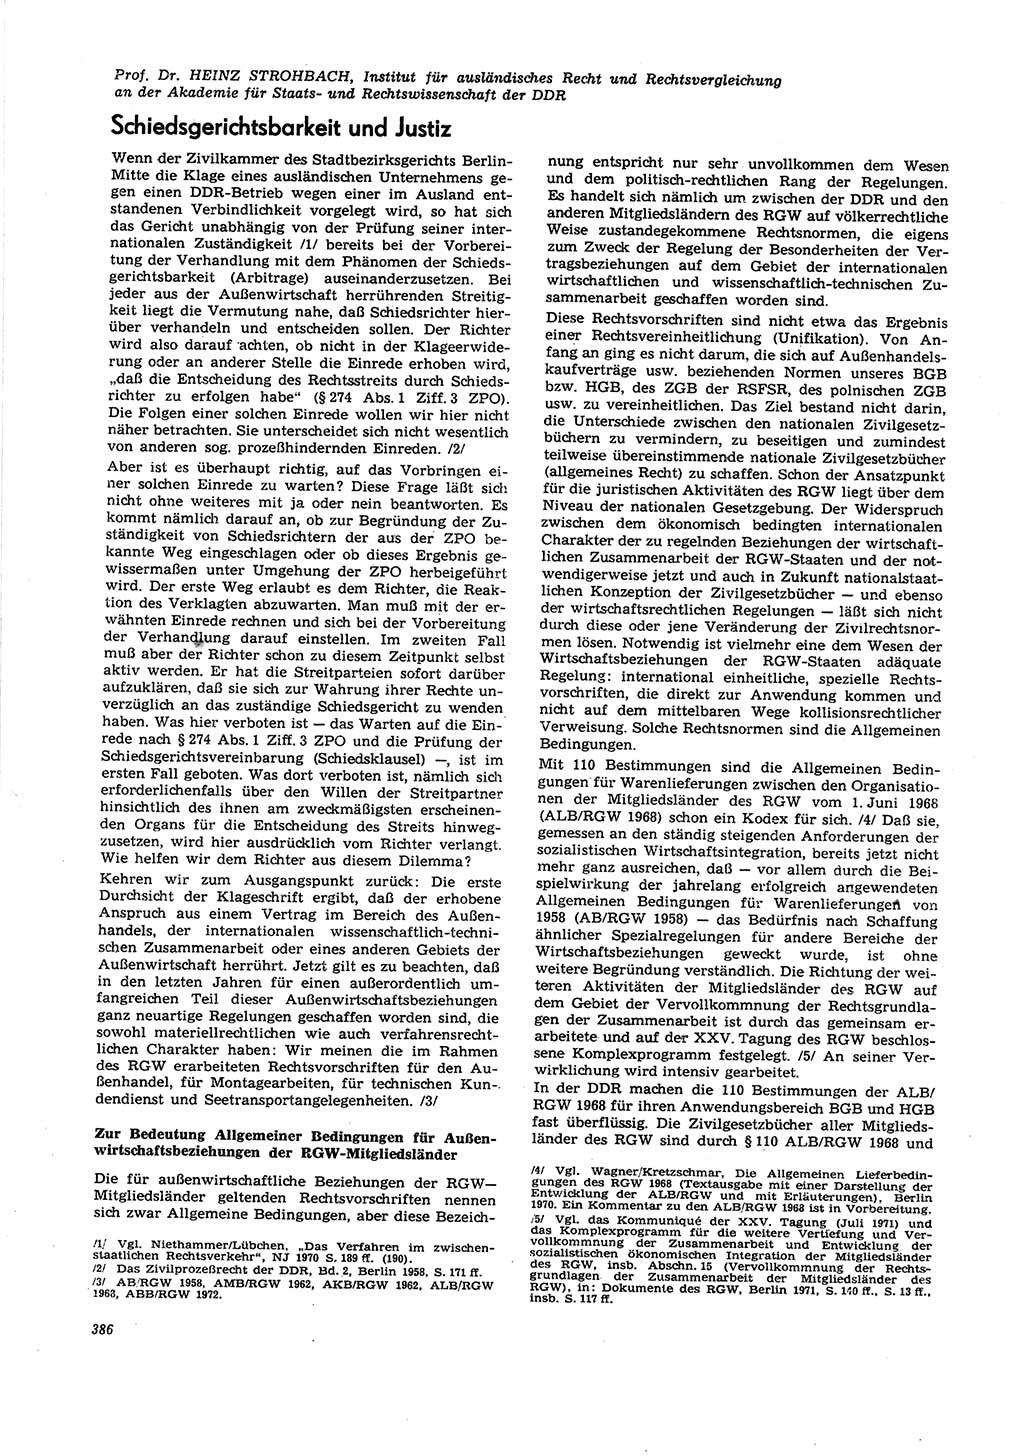 Neue Justiz (NJ), Zeitschrift für Recht und Rechtswissenschaft [Deutsche Demokratische Republik (DDR)], 27. Jahrgang 1973, Seite 386 (NJ DDR 1973, S. 386)